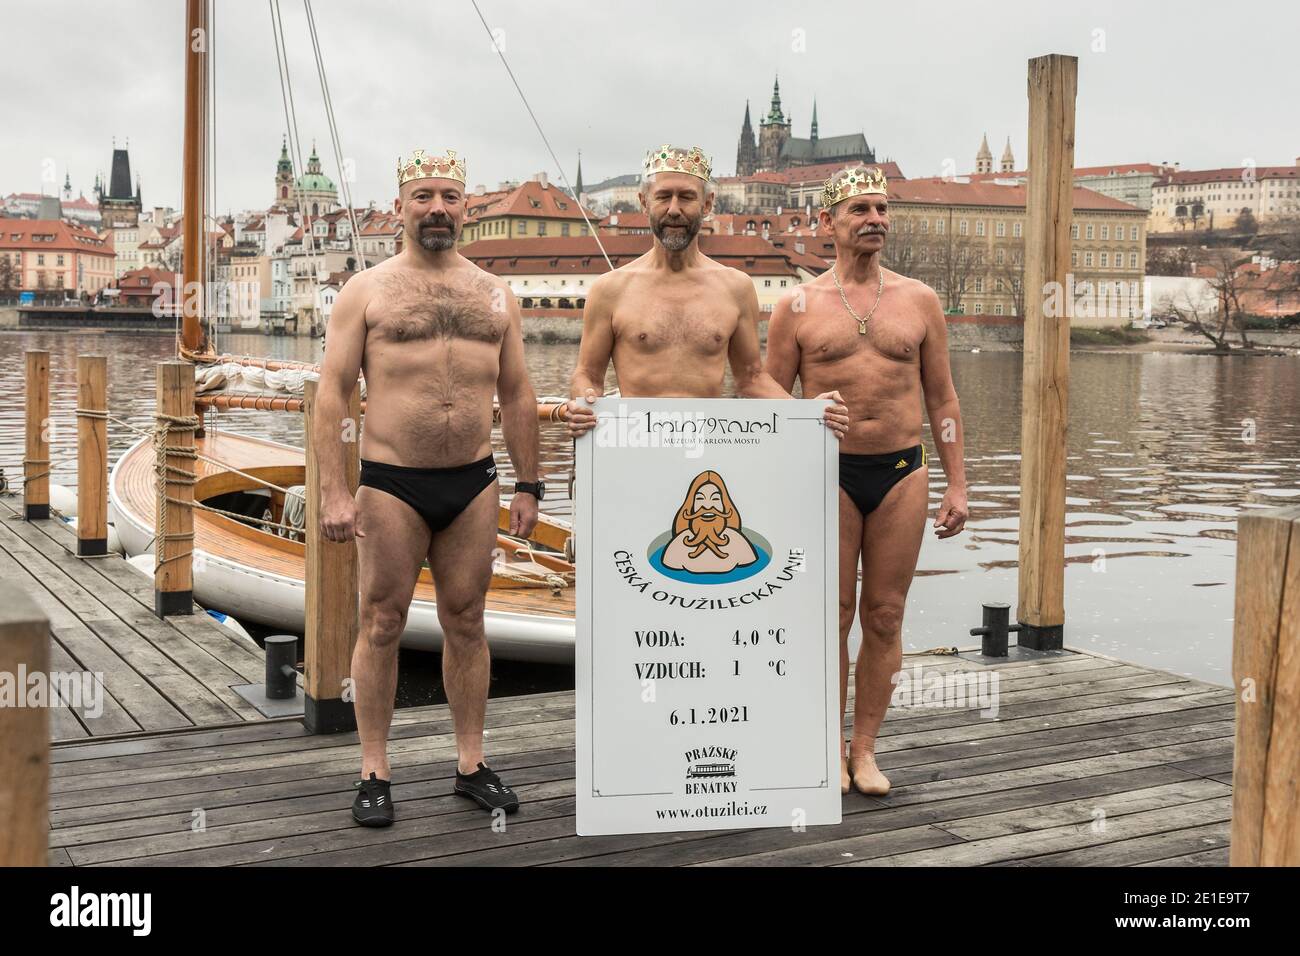 PRAGUE - 6 janvier : trois nageurs endurcis posent comme 3 rois le 6 janvier 2021 au quai de Prague à Venise, Prague, République tchèque. Nage traditionnelle à la mi-journée Banque D'Images